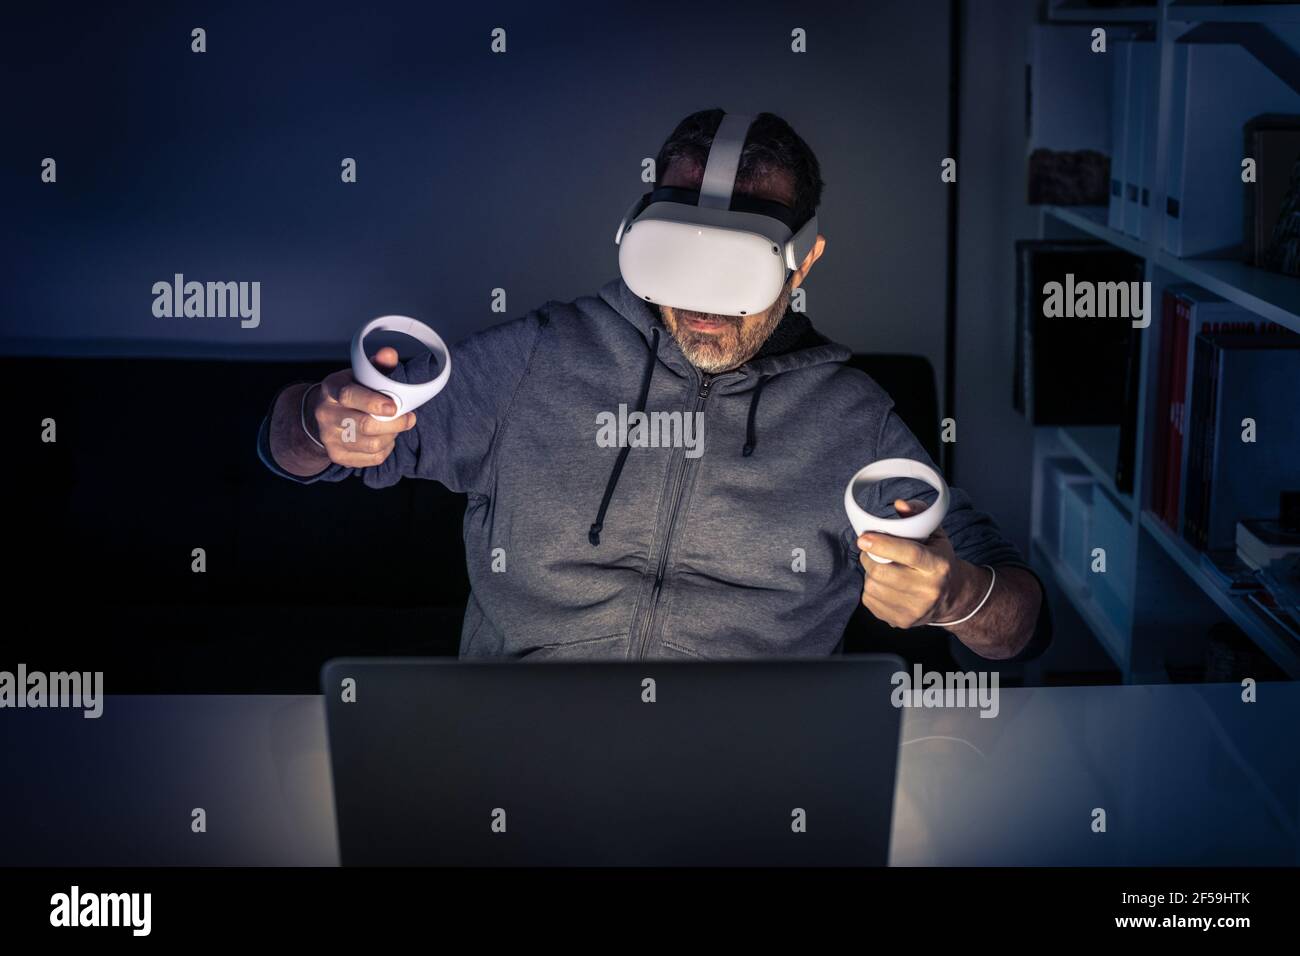 Homme jouant avec un appareil de réalité virtuelle. Cyber-punk ambiance futuriste, expérience immersive avec jeu vidéo et technologie VR 3D Viewer. Personnes utilisant nex Banque D'Images